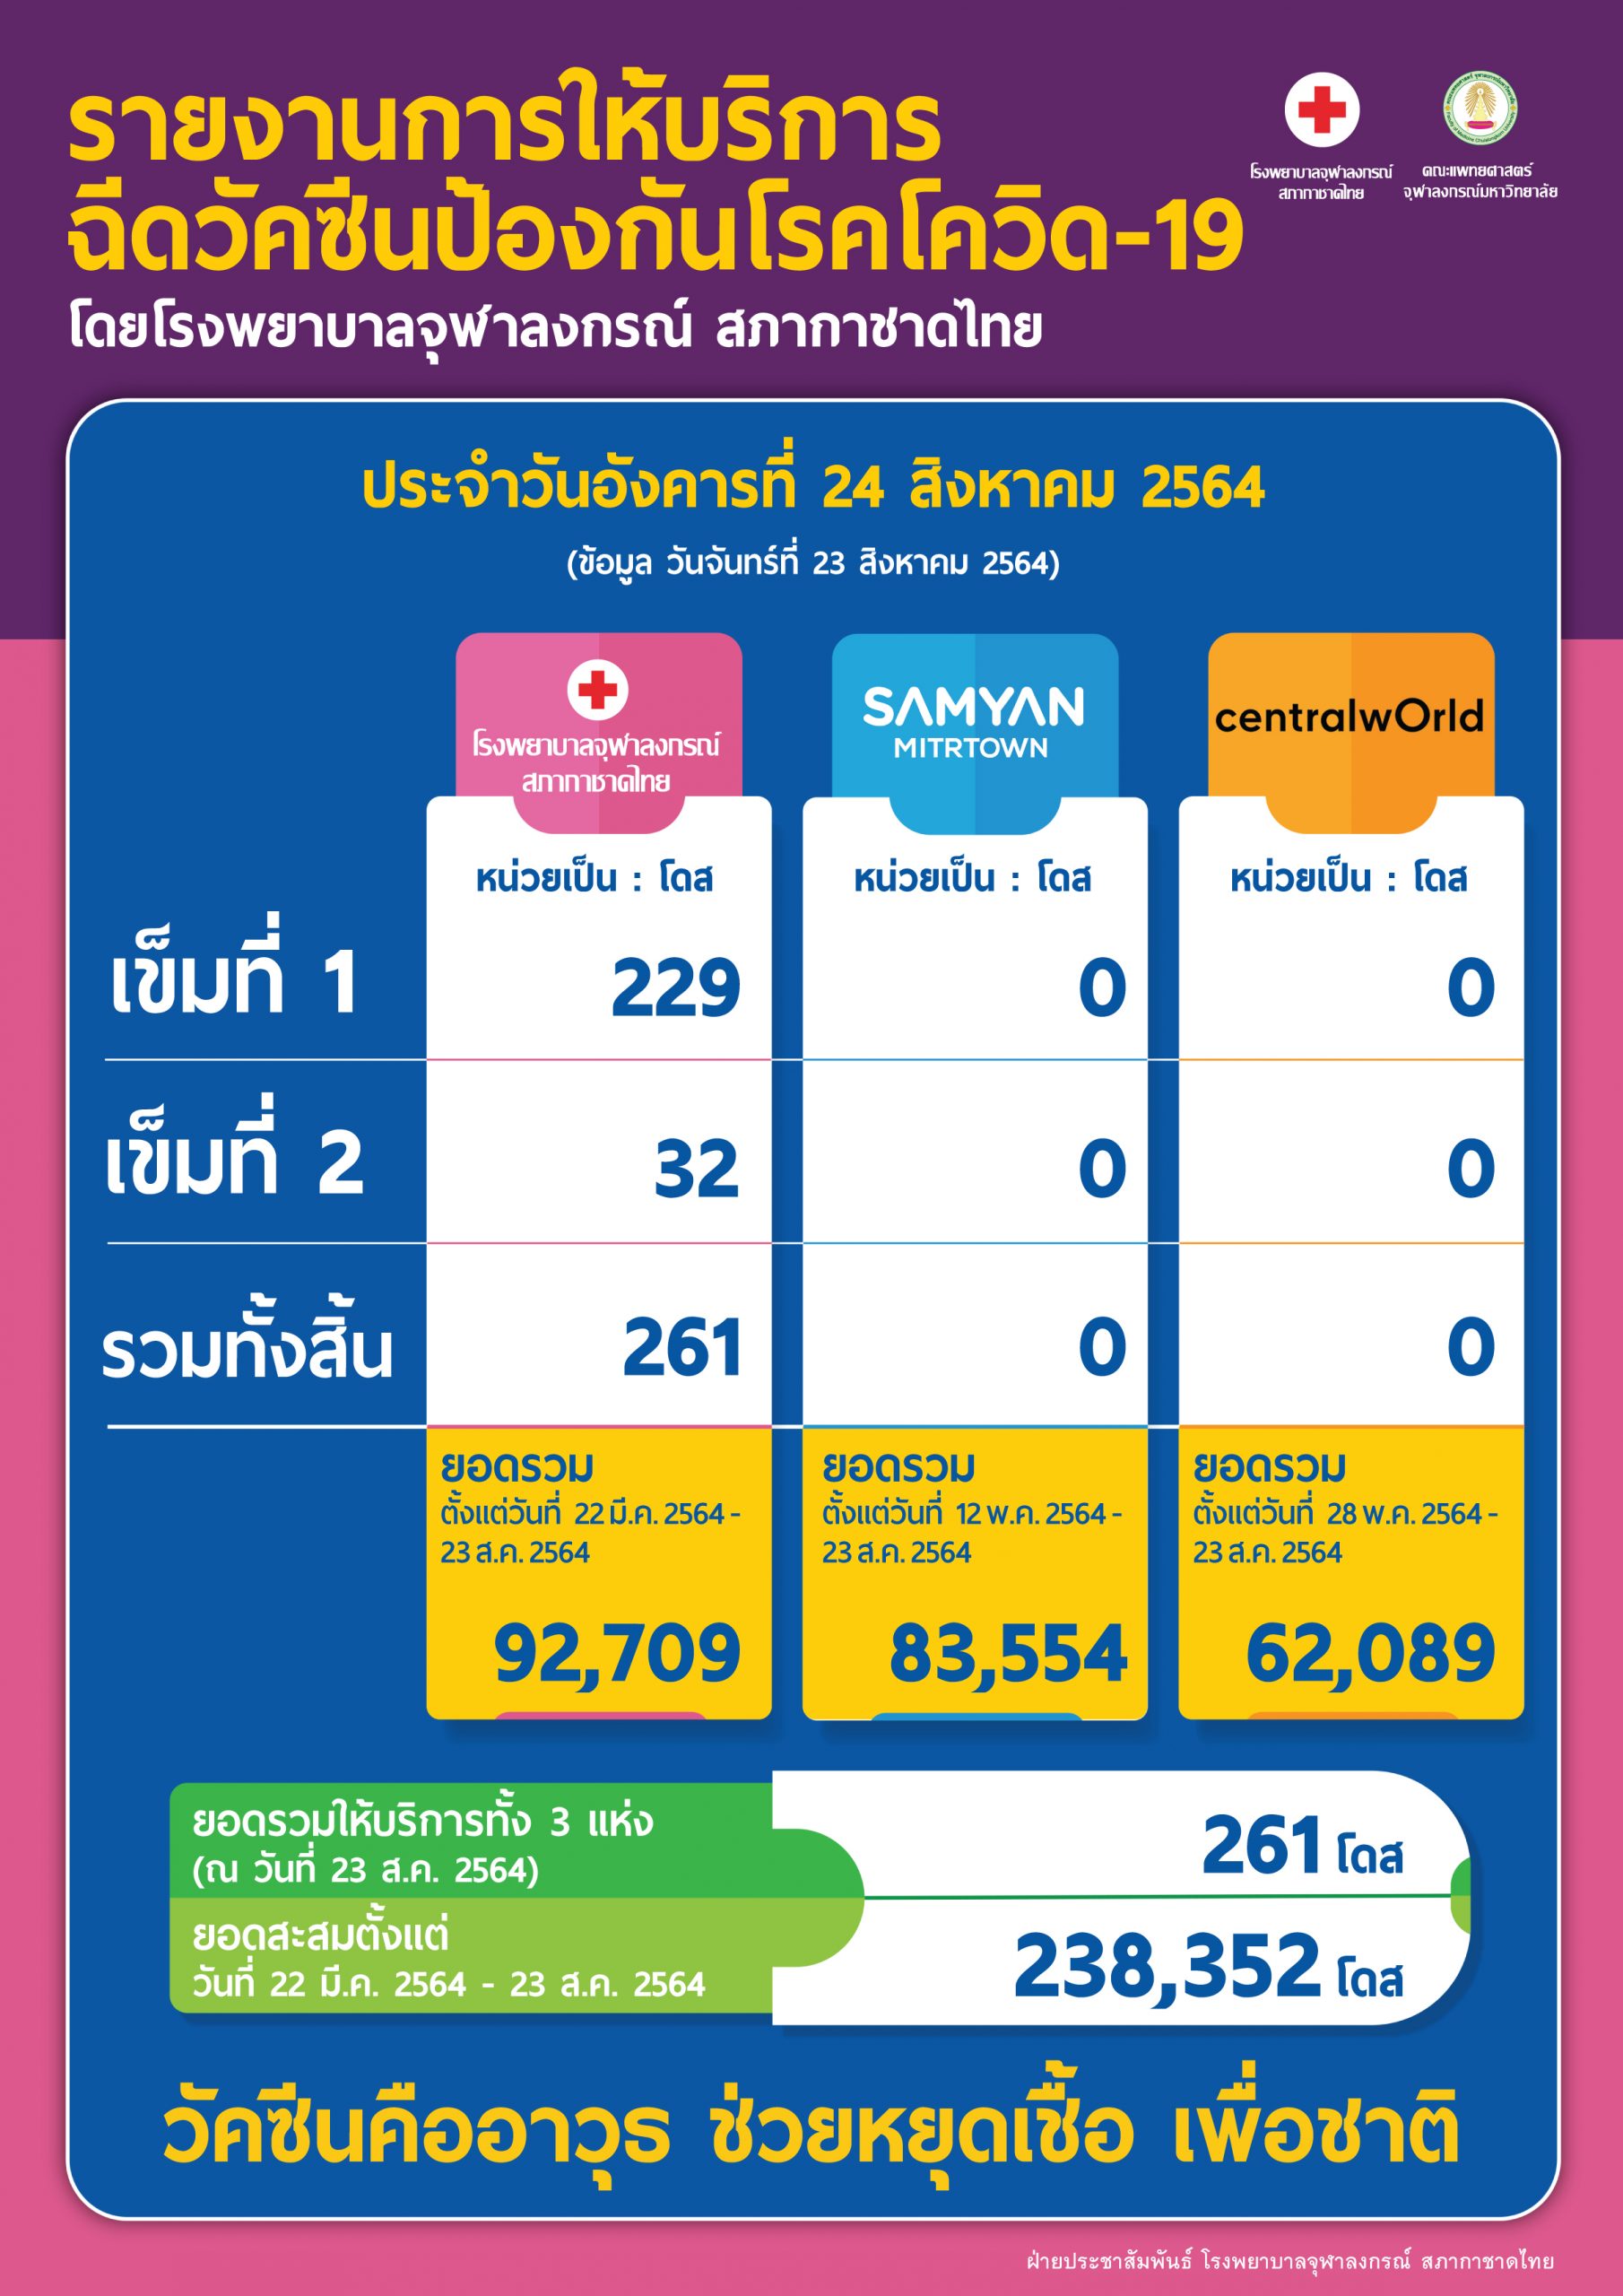 รายงานการให้บริการฉีดวัคซีนป้องกันโรคโควิด-19 โดยโรงพยาบาลจุฬาลงกรณ์ สภากาชาดไทย ประจำวันอังคารที่ 24 สิงหาคม 2564